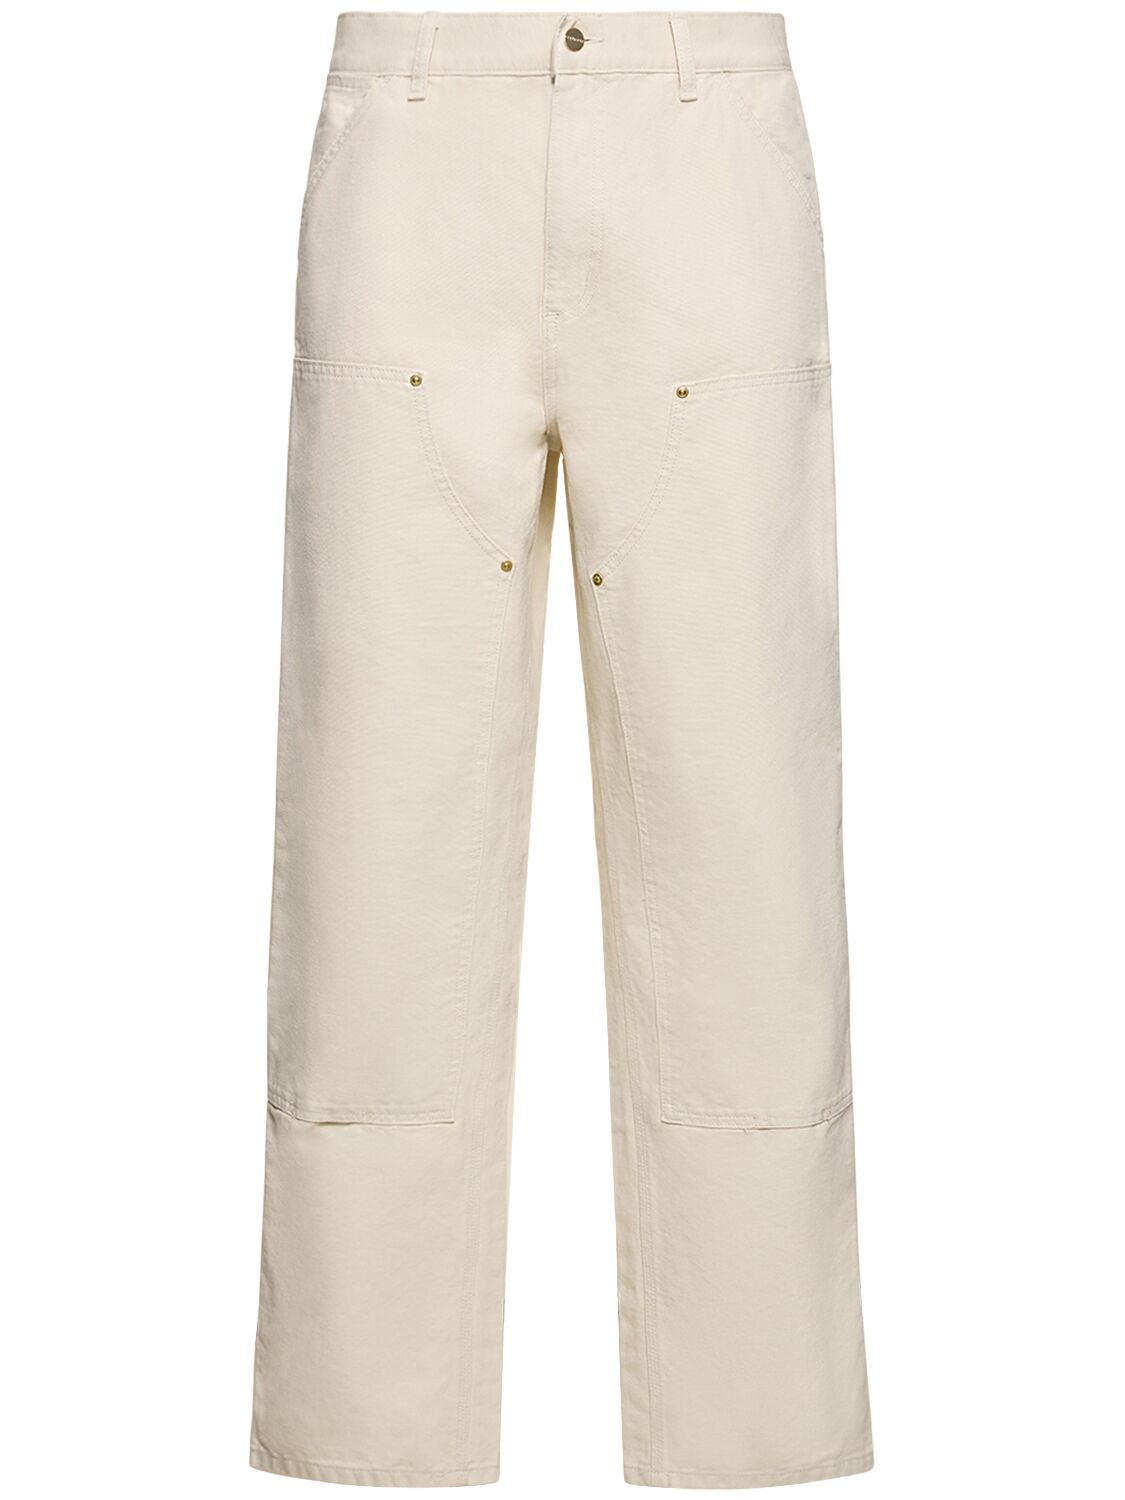 Cotton Canvas Carpenter Pants – MEN > CLOTHING > PANTS